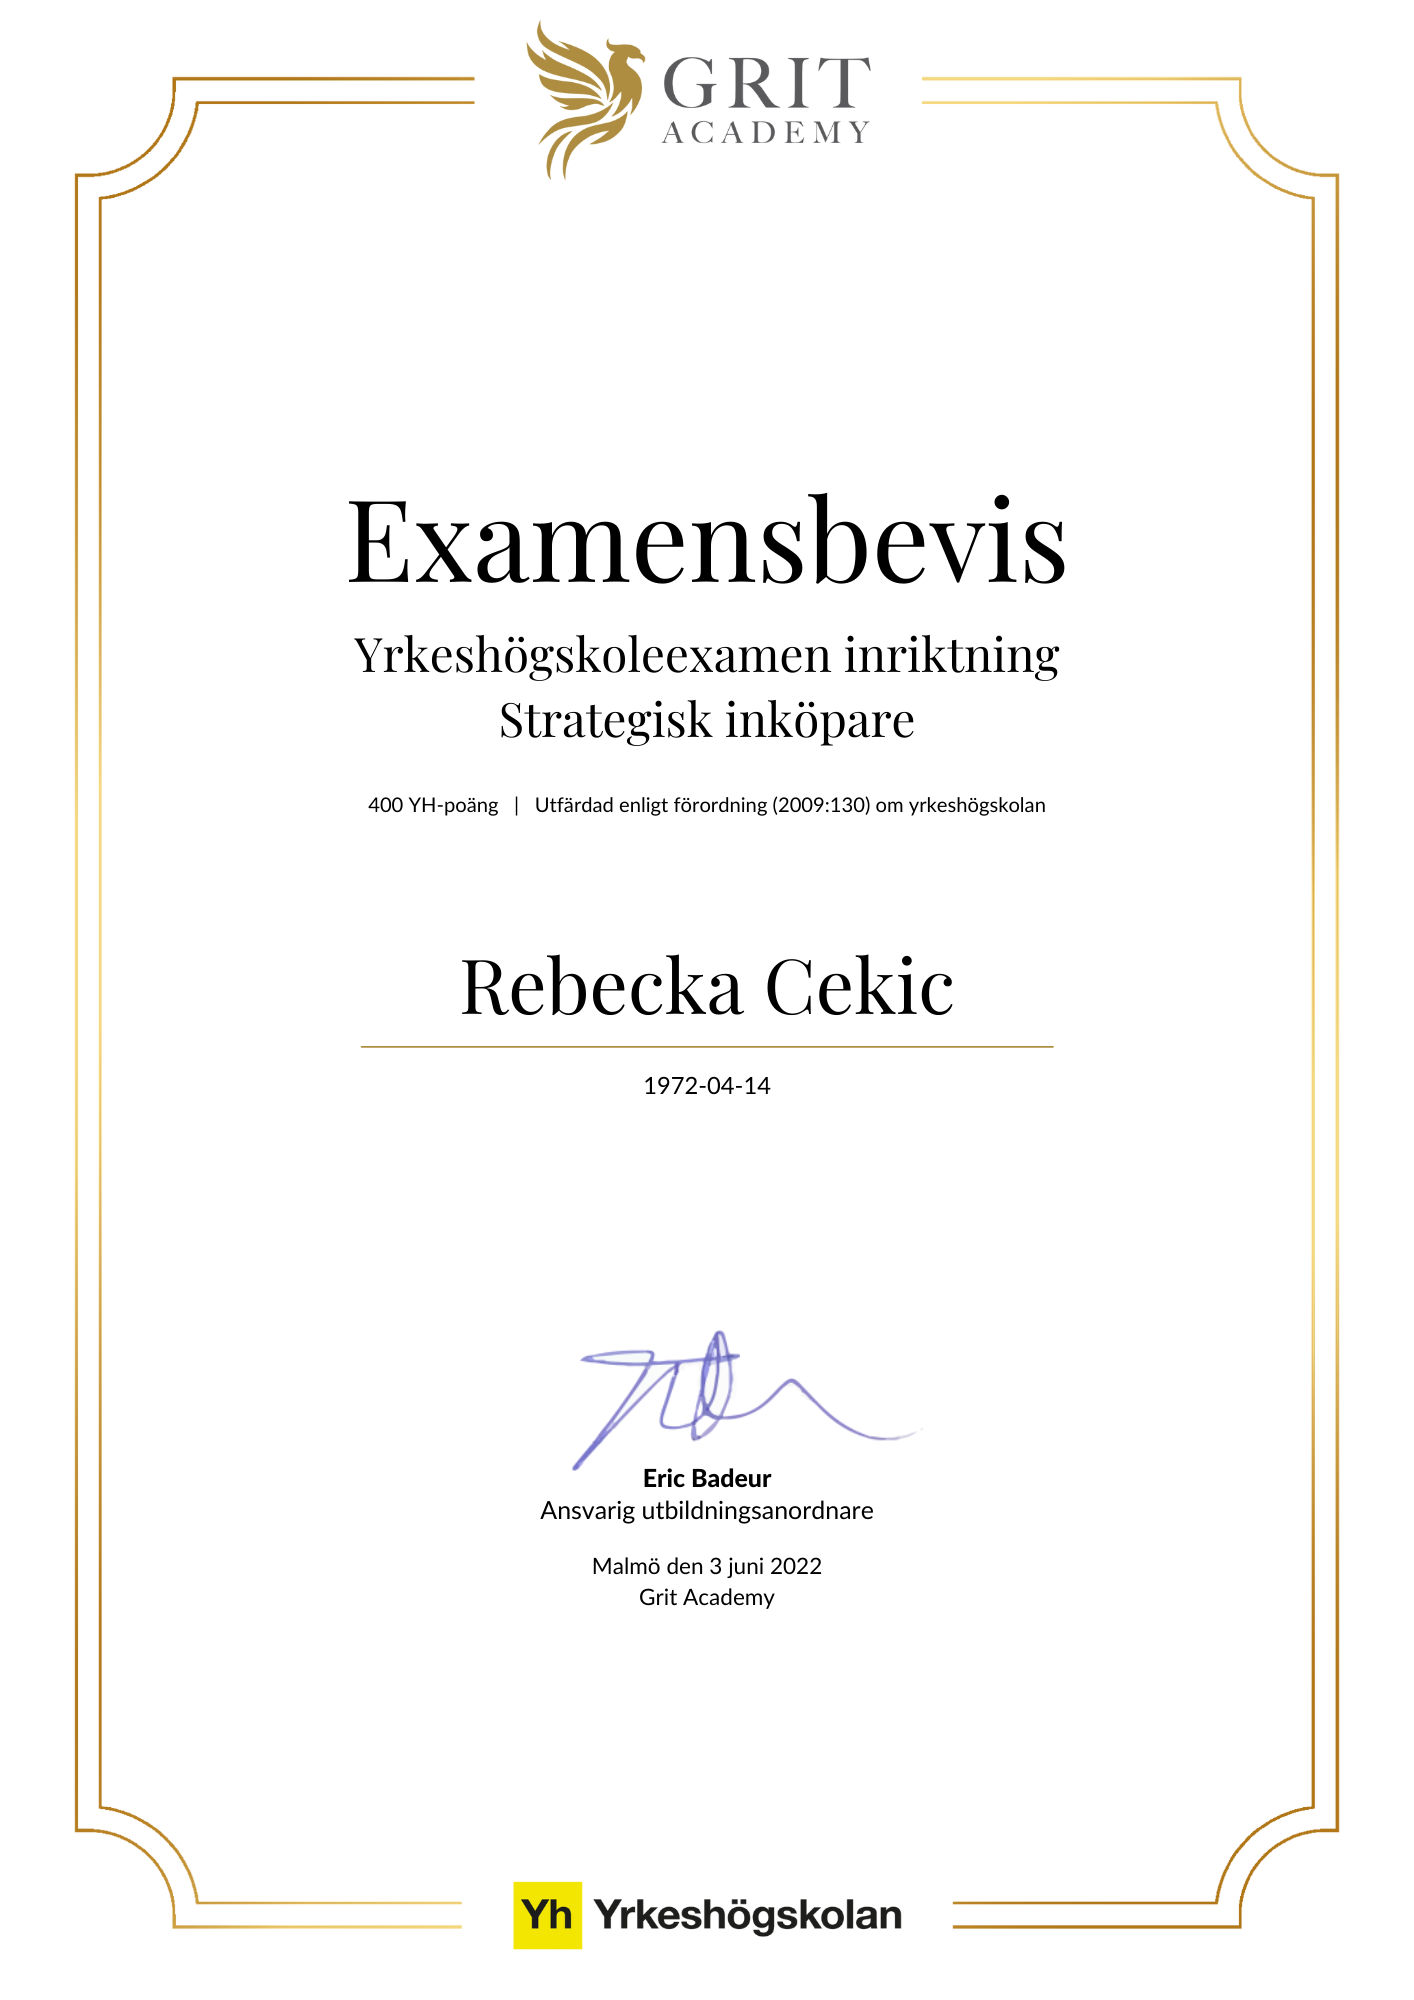 Examensbevis Rebecka Cekic - 1